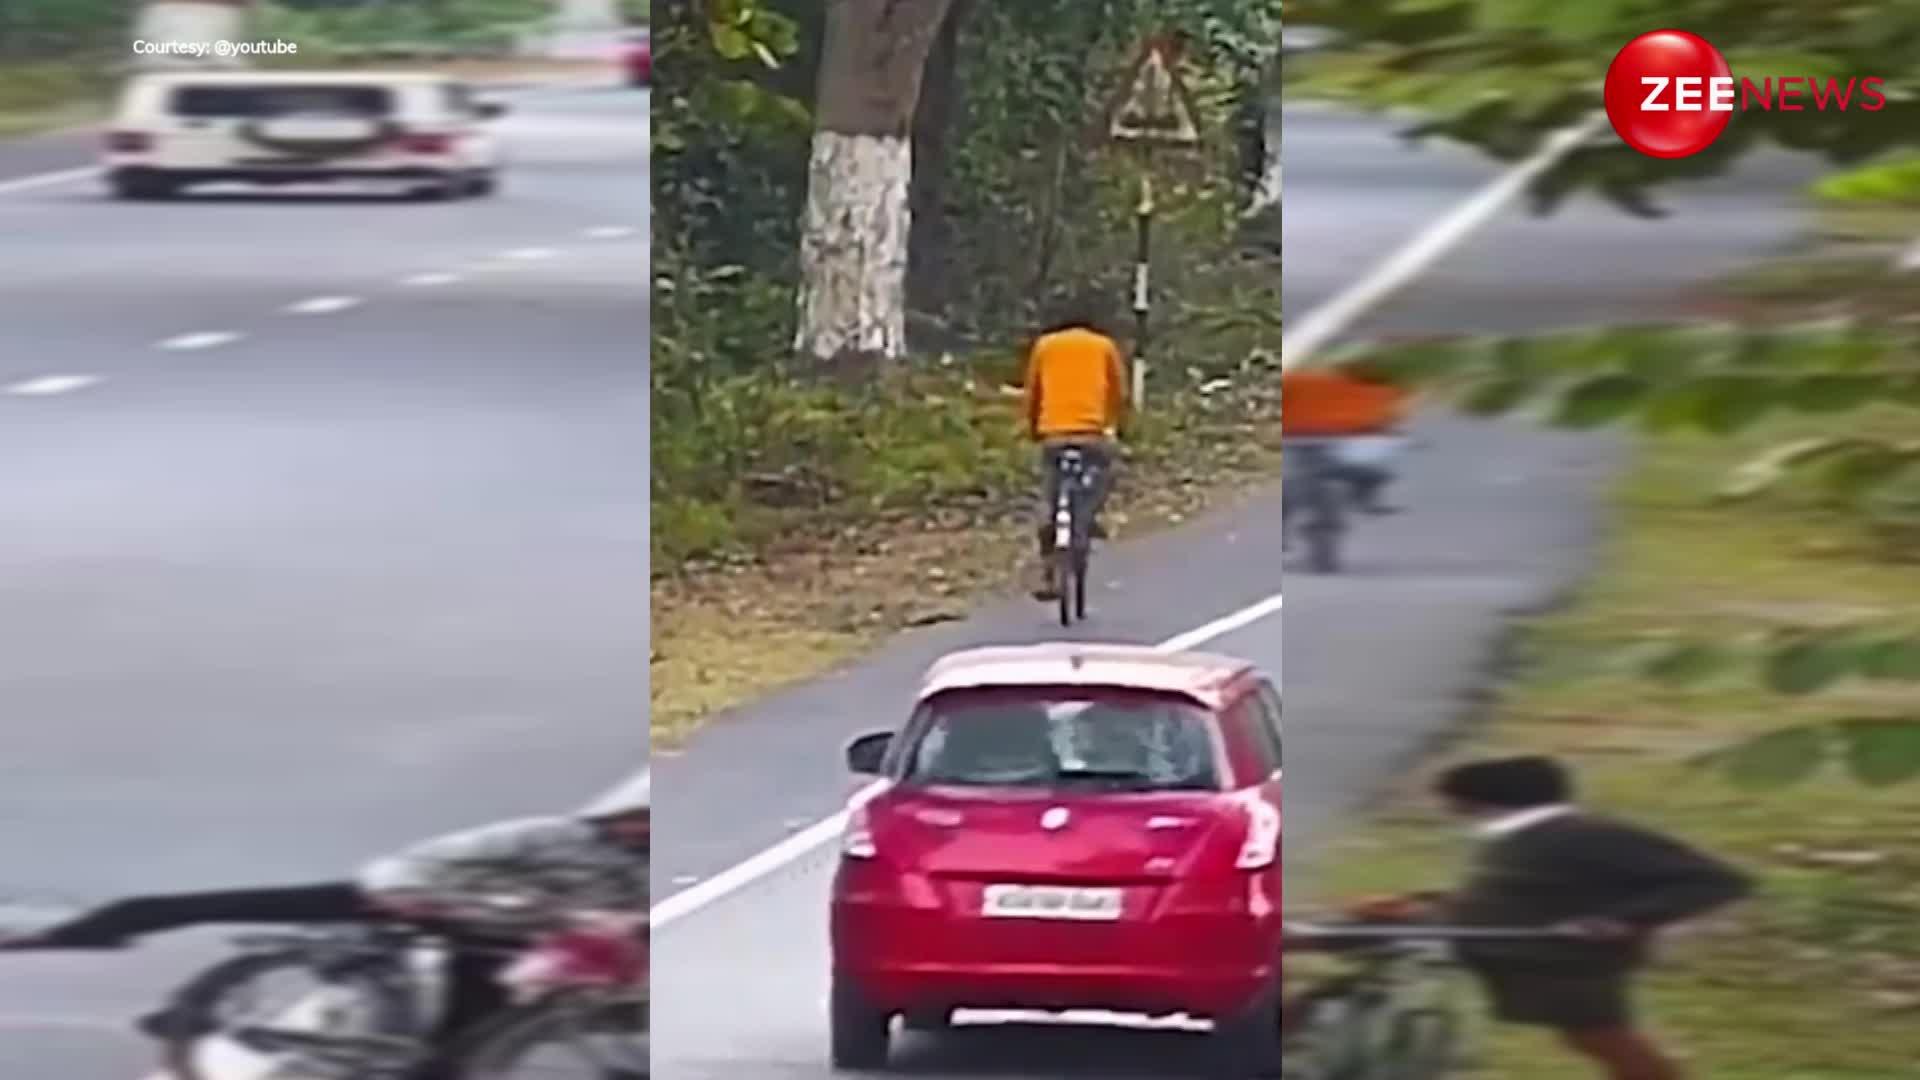 साइकिल चलाते हुए आदमी पर हुआ बाघ का हमला, वीडियो देख उड़ गए सबके होश